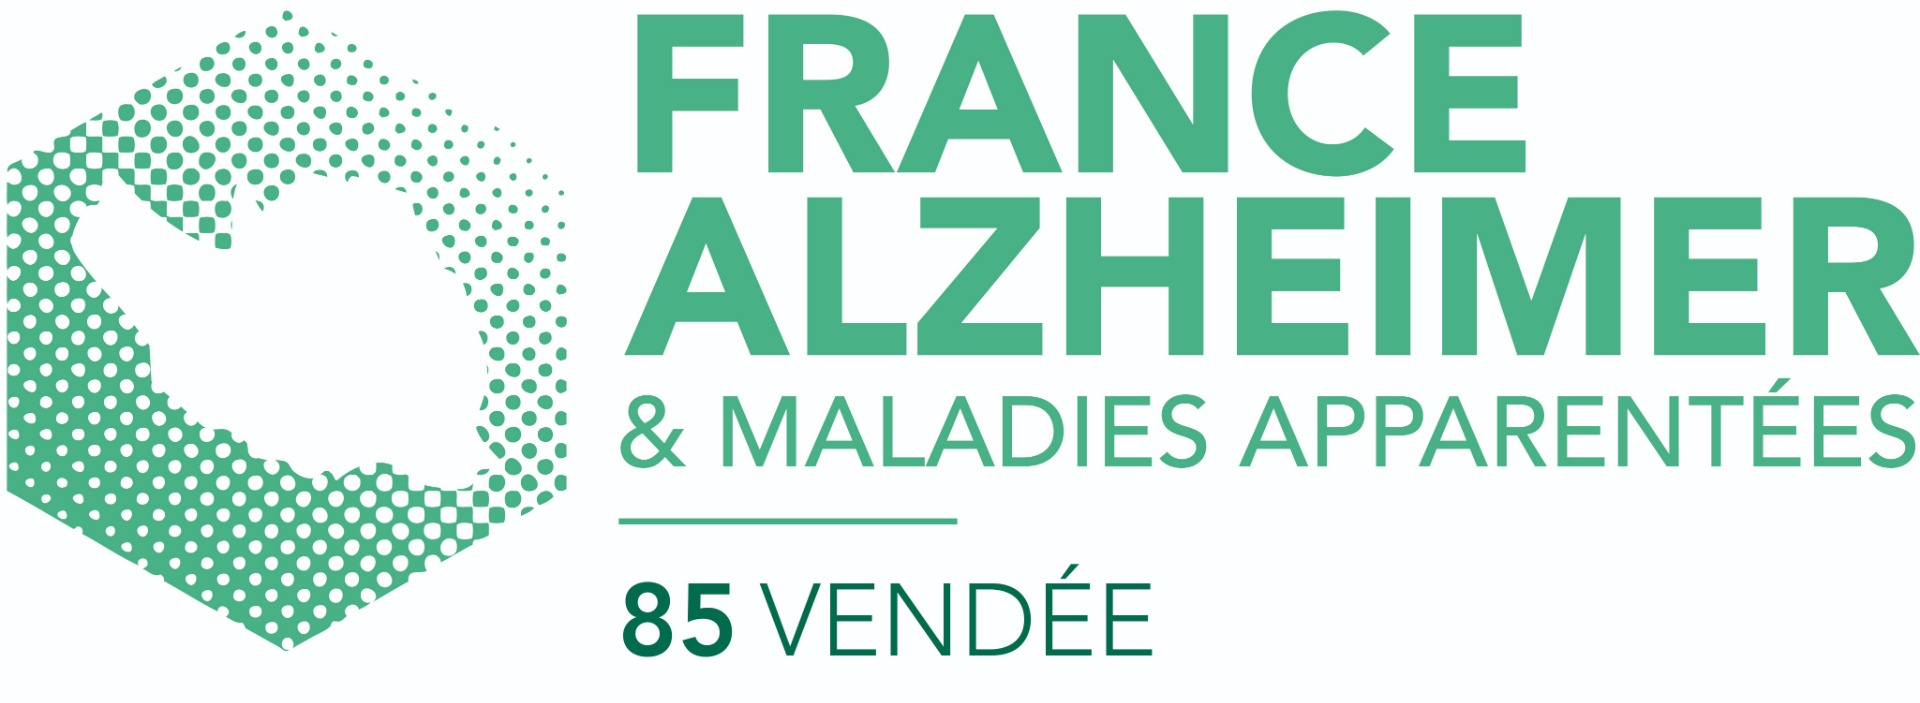 Photo de France Alzheimer Vendée à LA ROCHE SUR YON